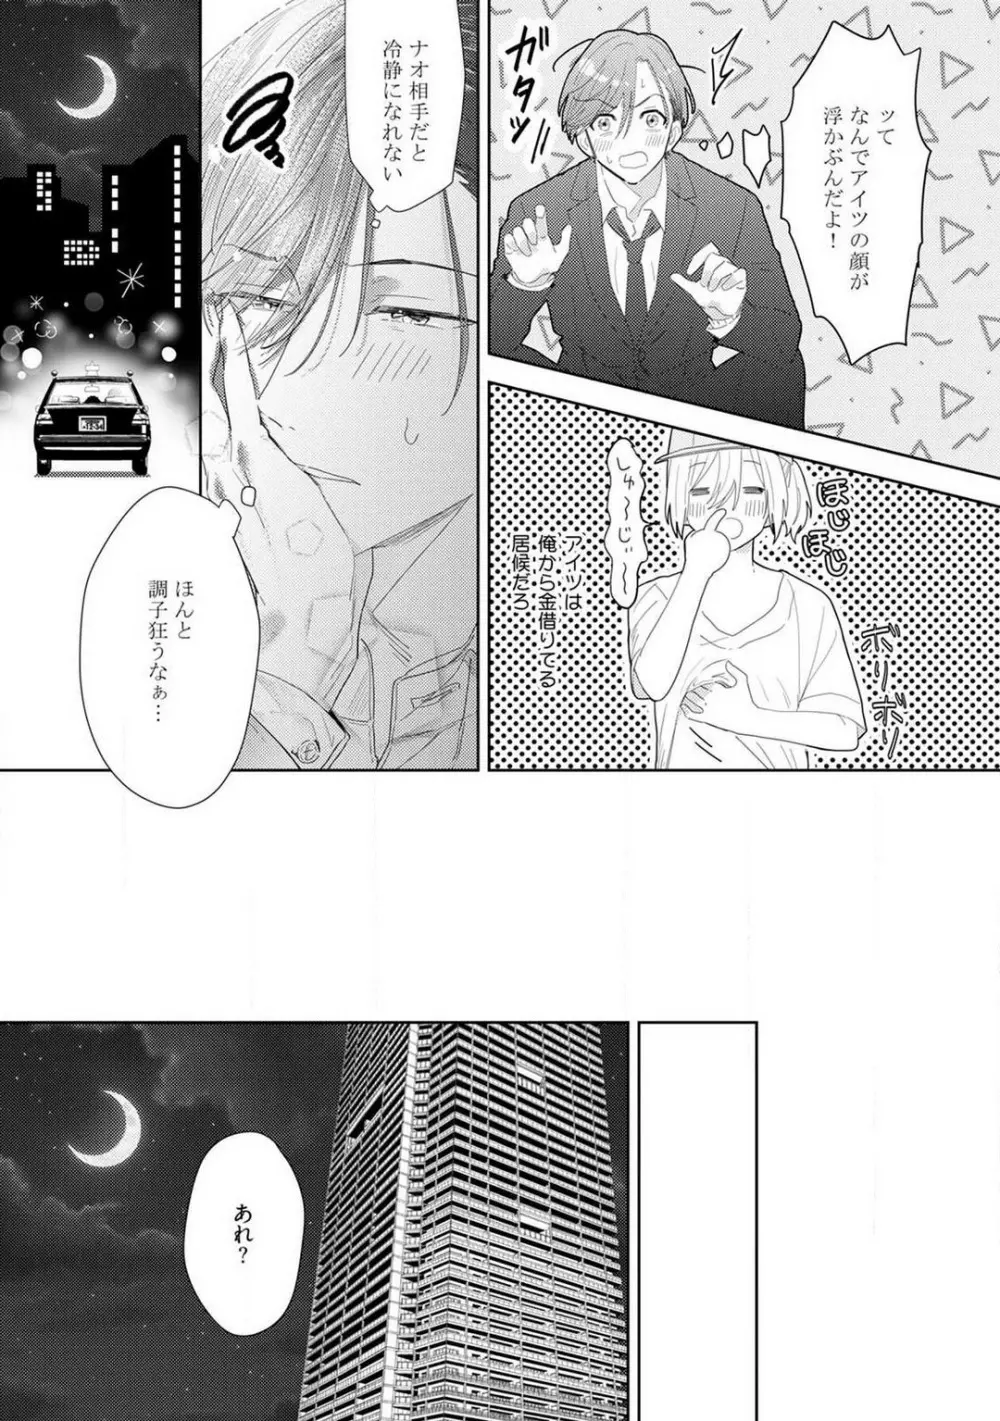 御曹司とヤンキー女のこじらせ恋 1-6 64ページ